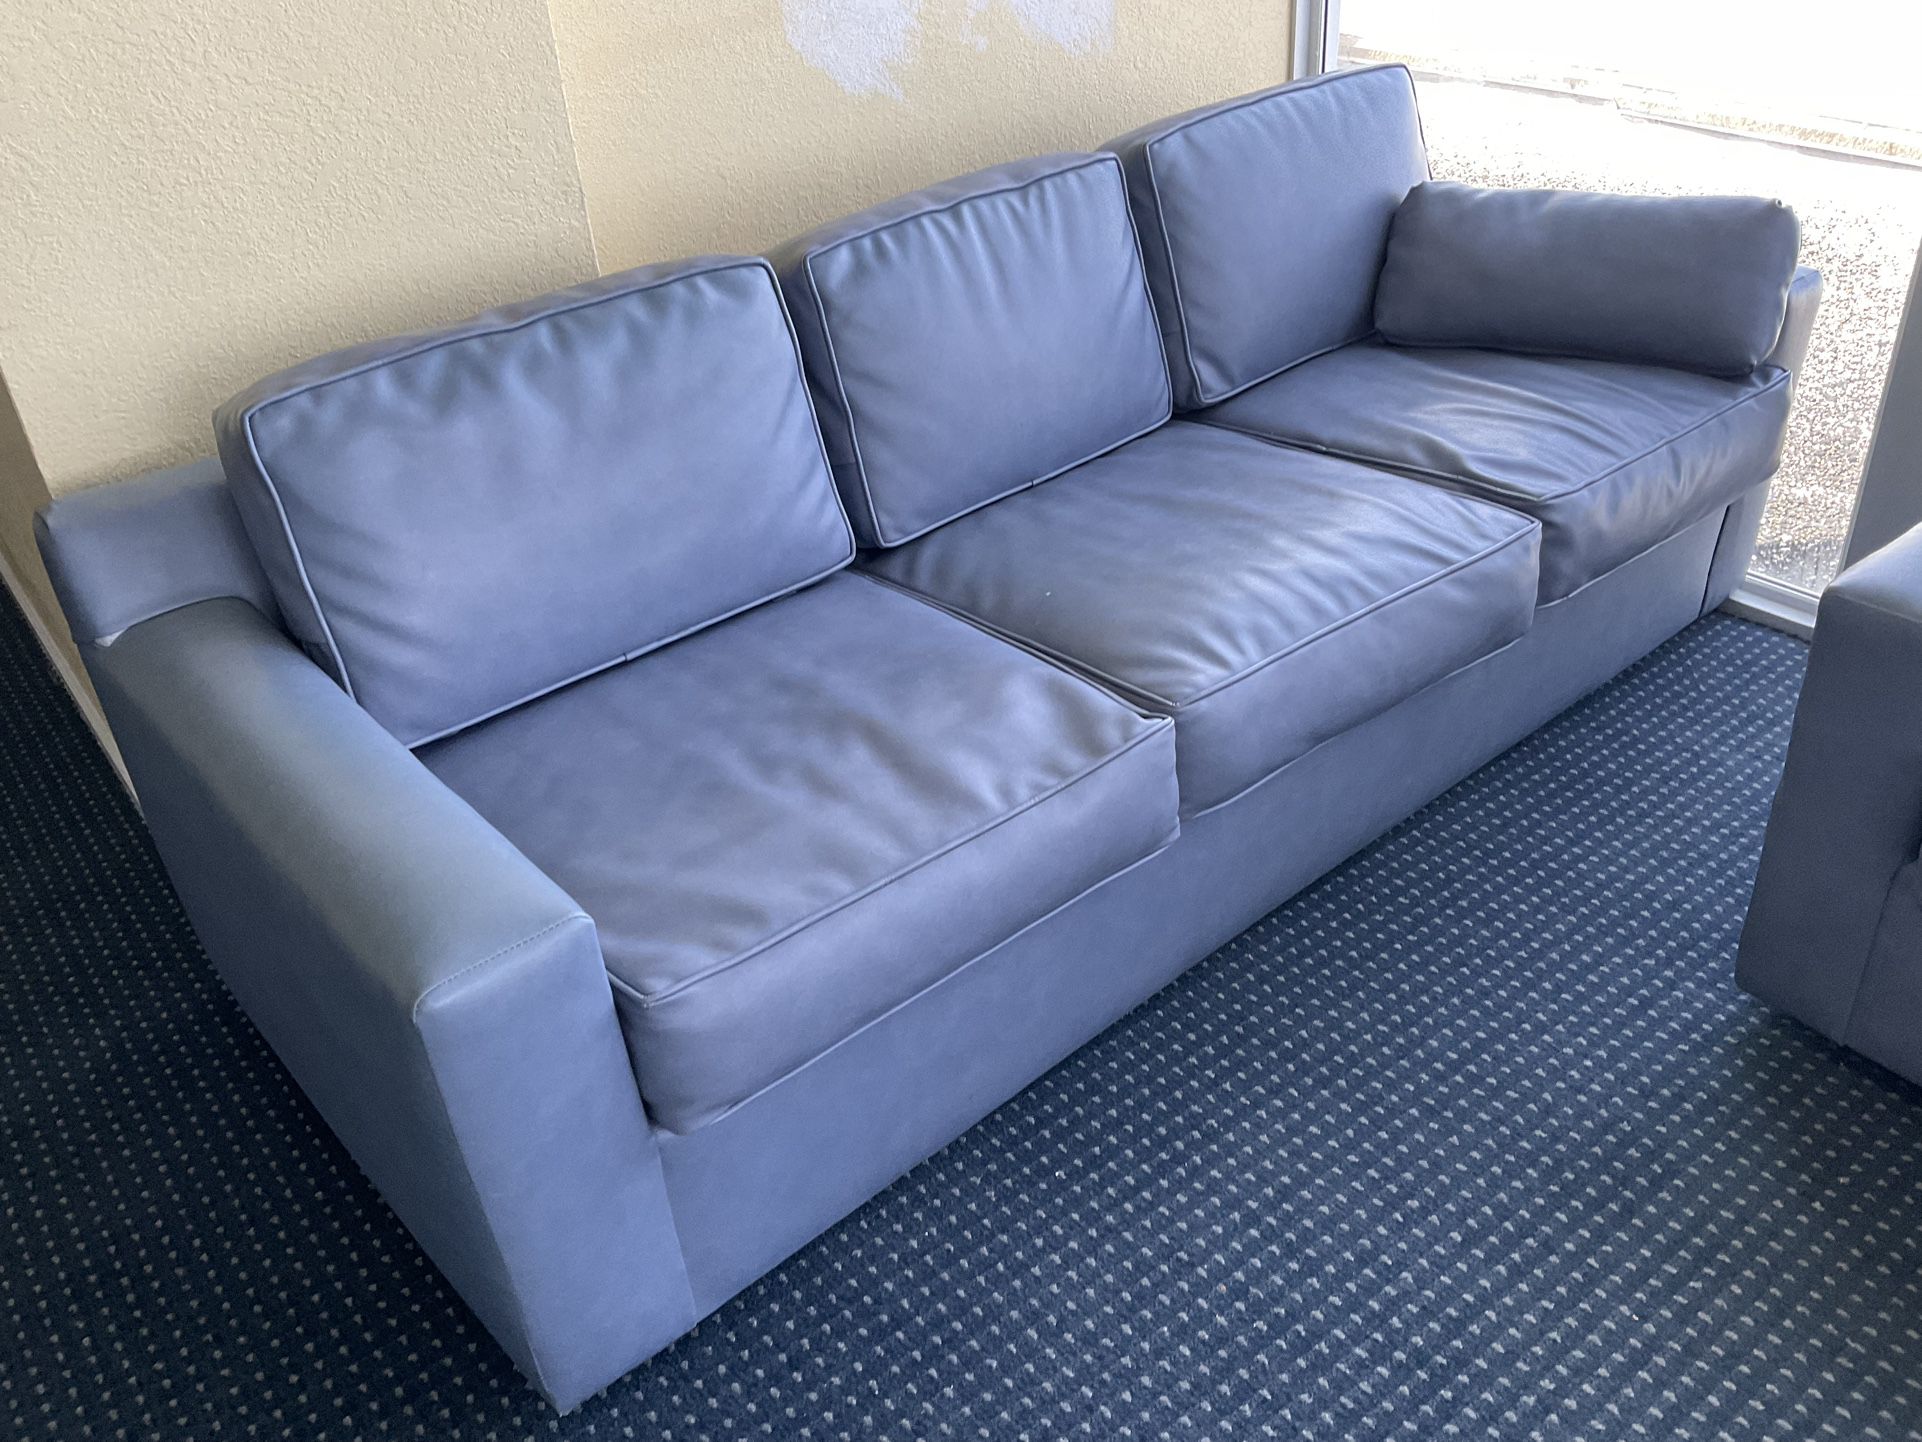 1 Sleeper Sofa $100, Regular Sofa $75